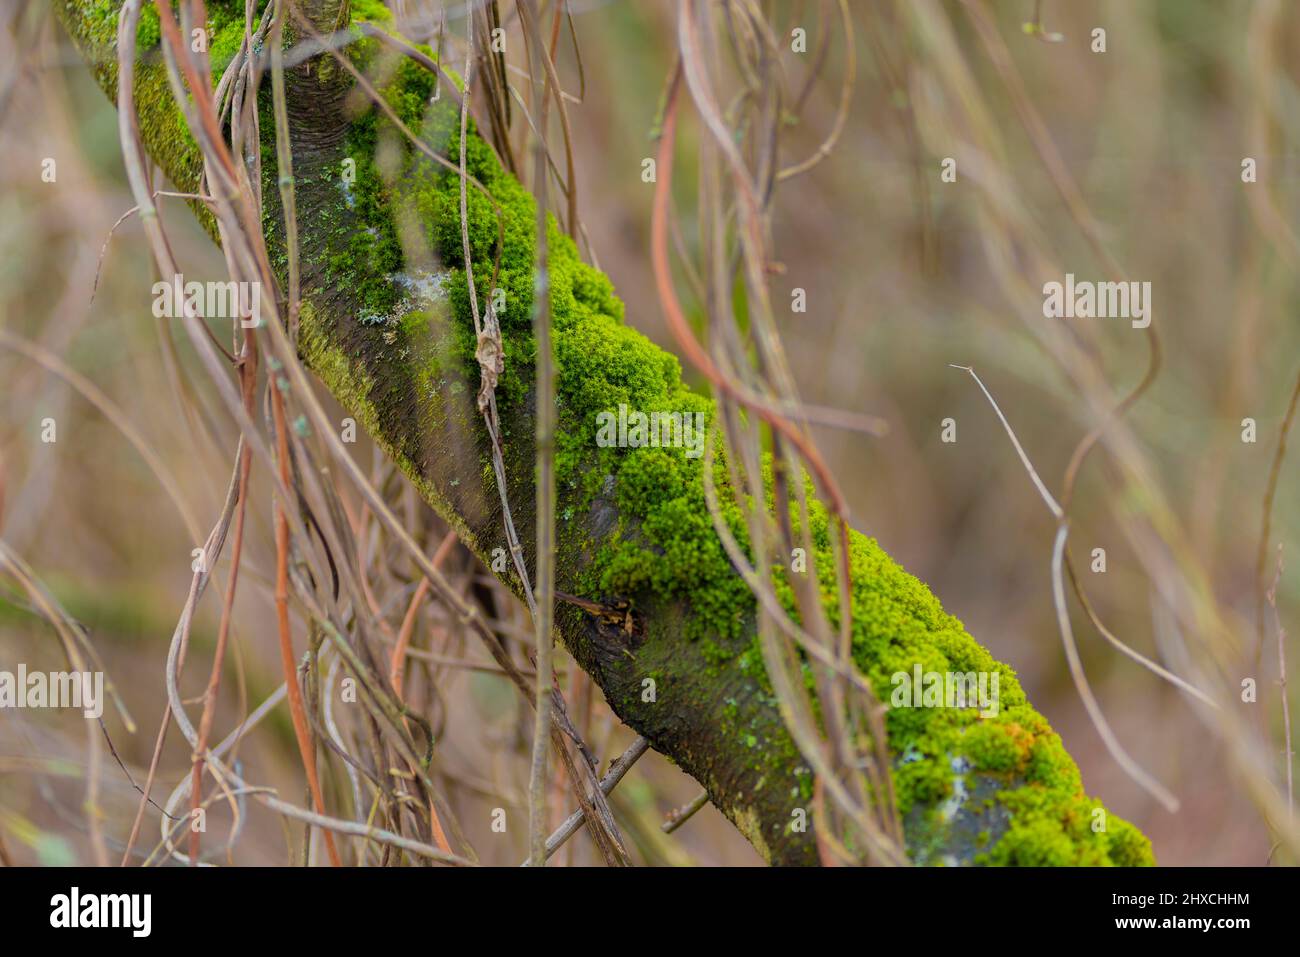 Rametto coperto di muschio in inverno, profondità di campo molto bassa, bello bokeh morbido e sfocato Foto Stock